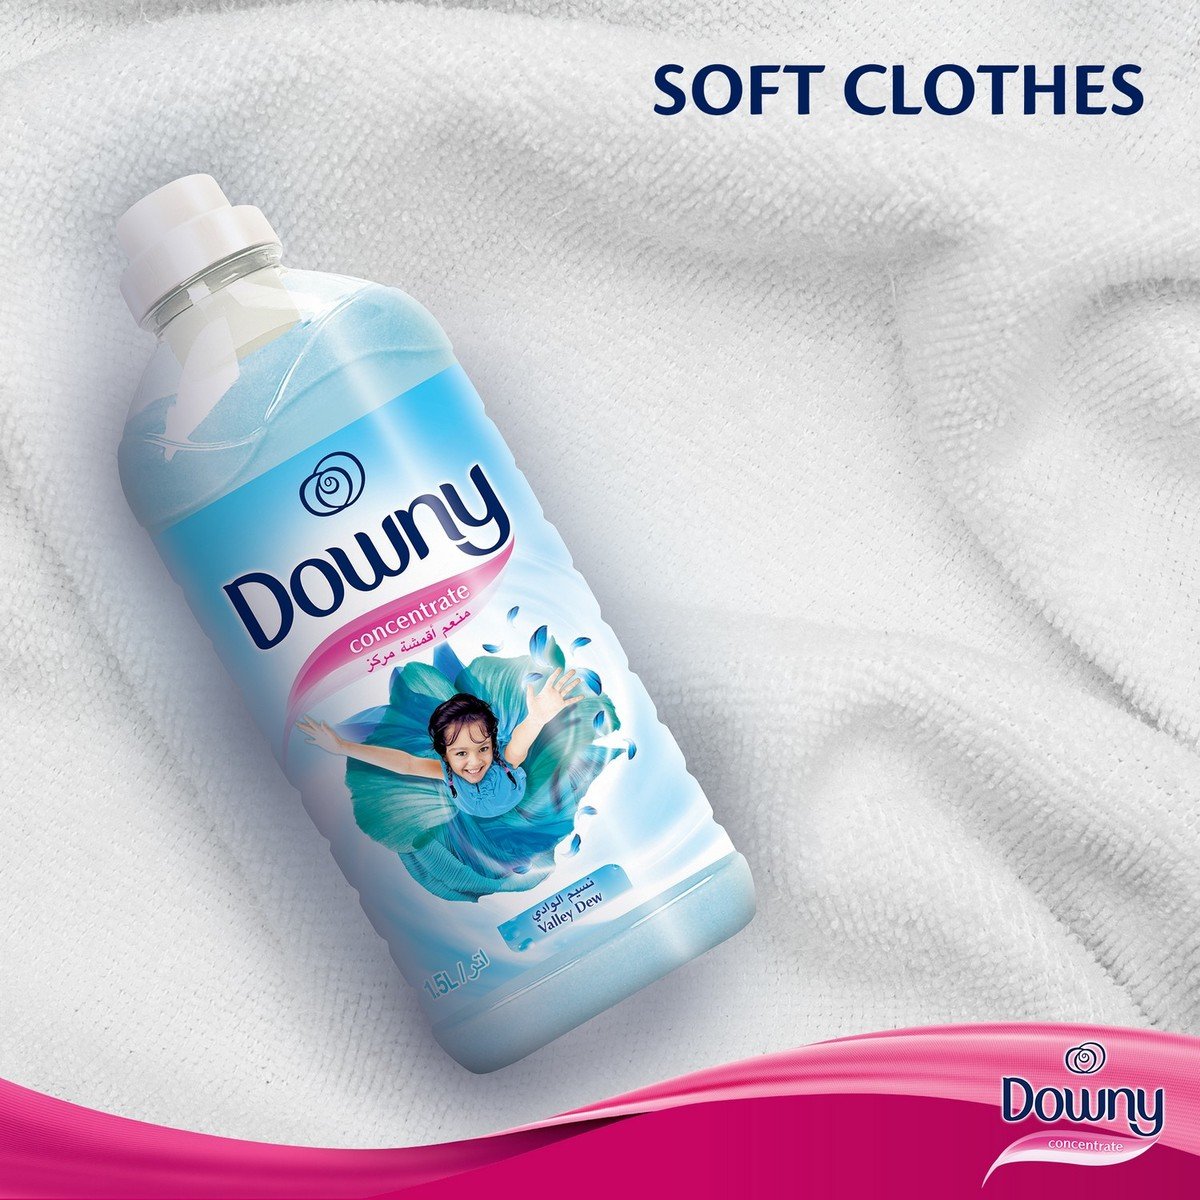 Downy Stay Fresh Regular Fabric Softener 3Litre